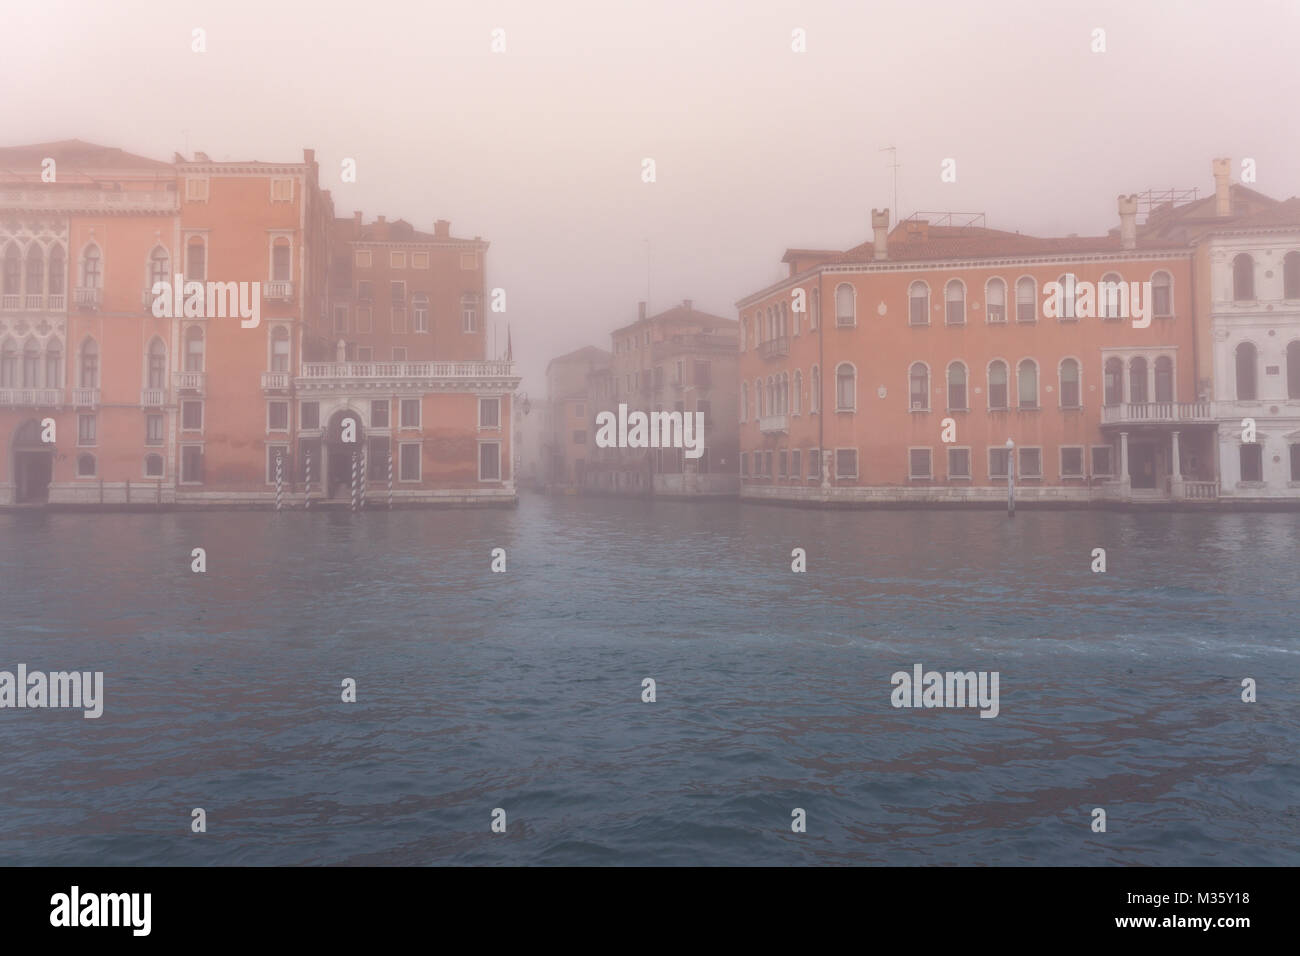 Venedig Canal Grande im Morgennebel Lagunenstadt Italien Reisen Europa Welt Erbe Stockfoto